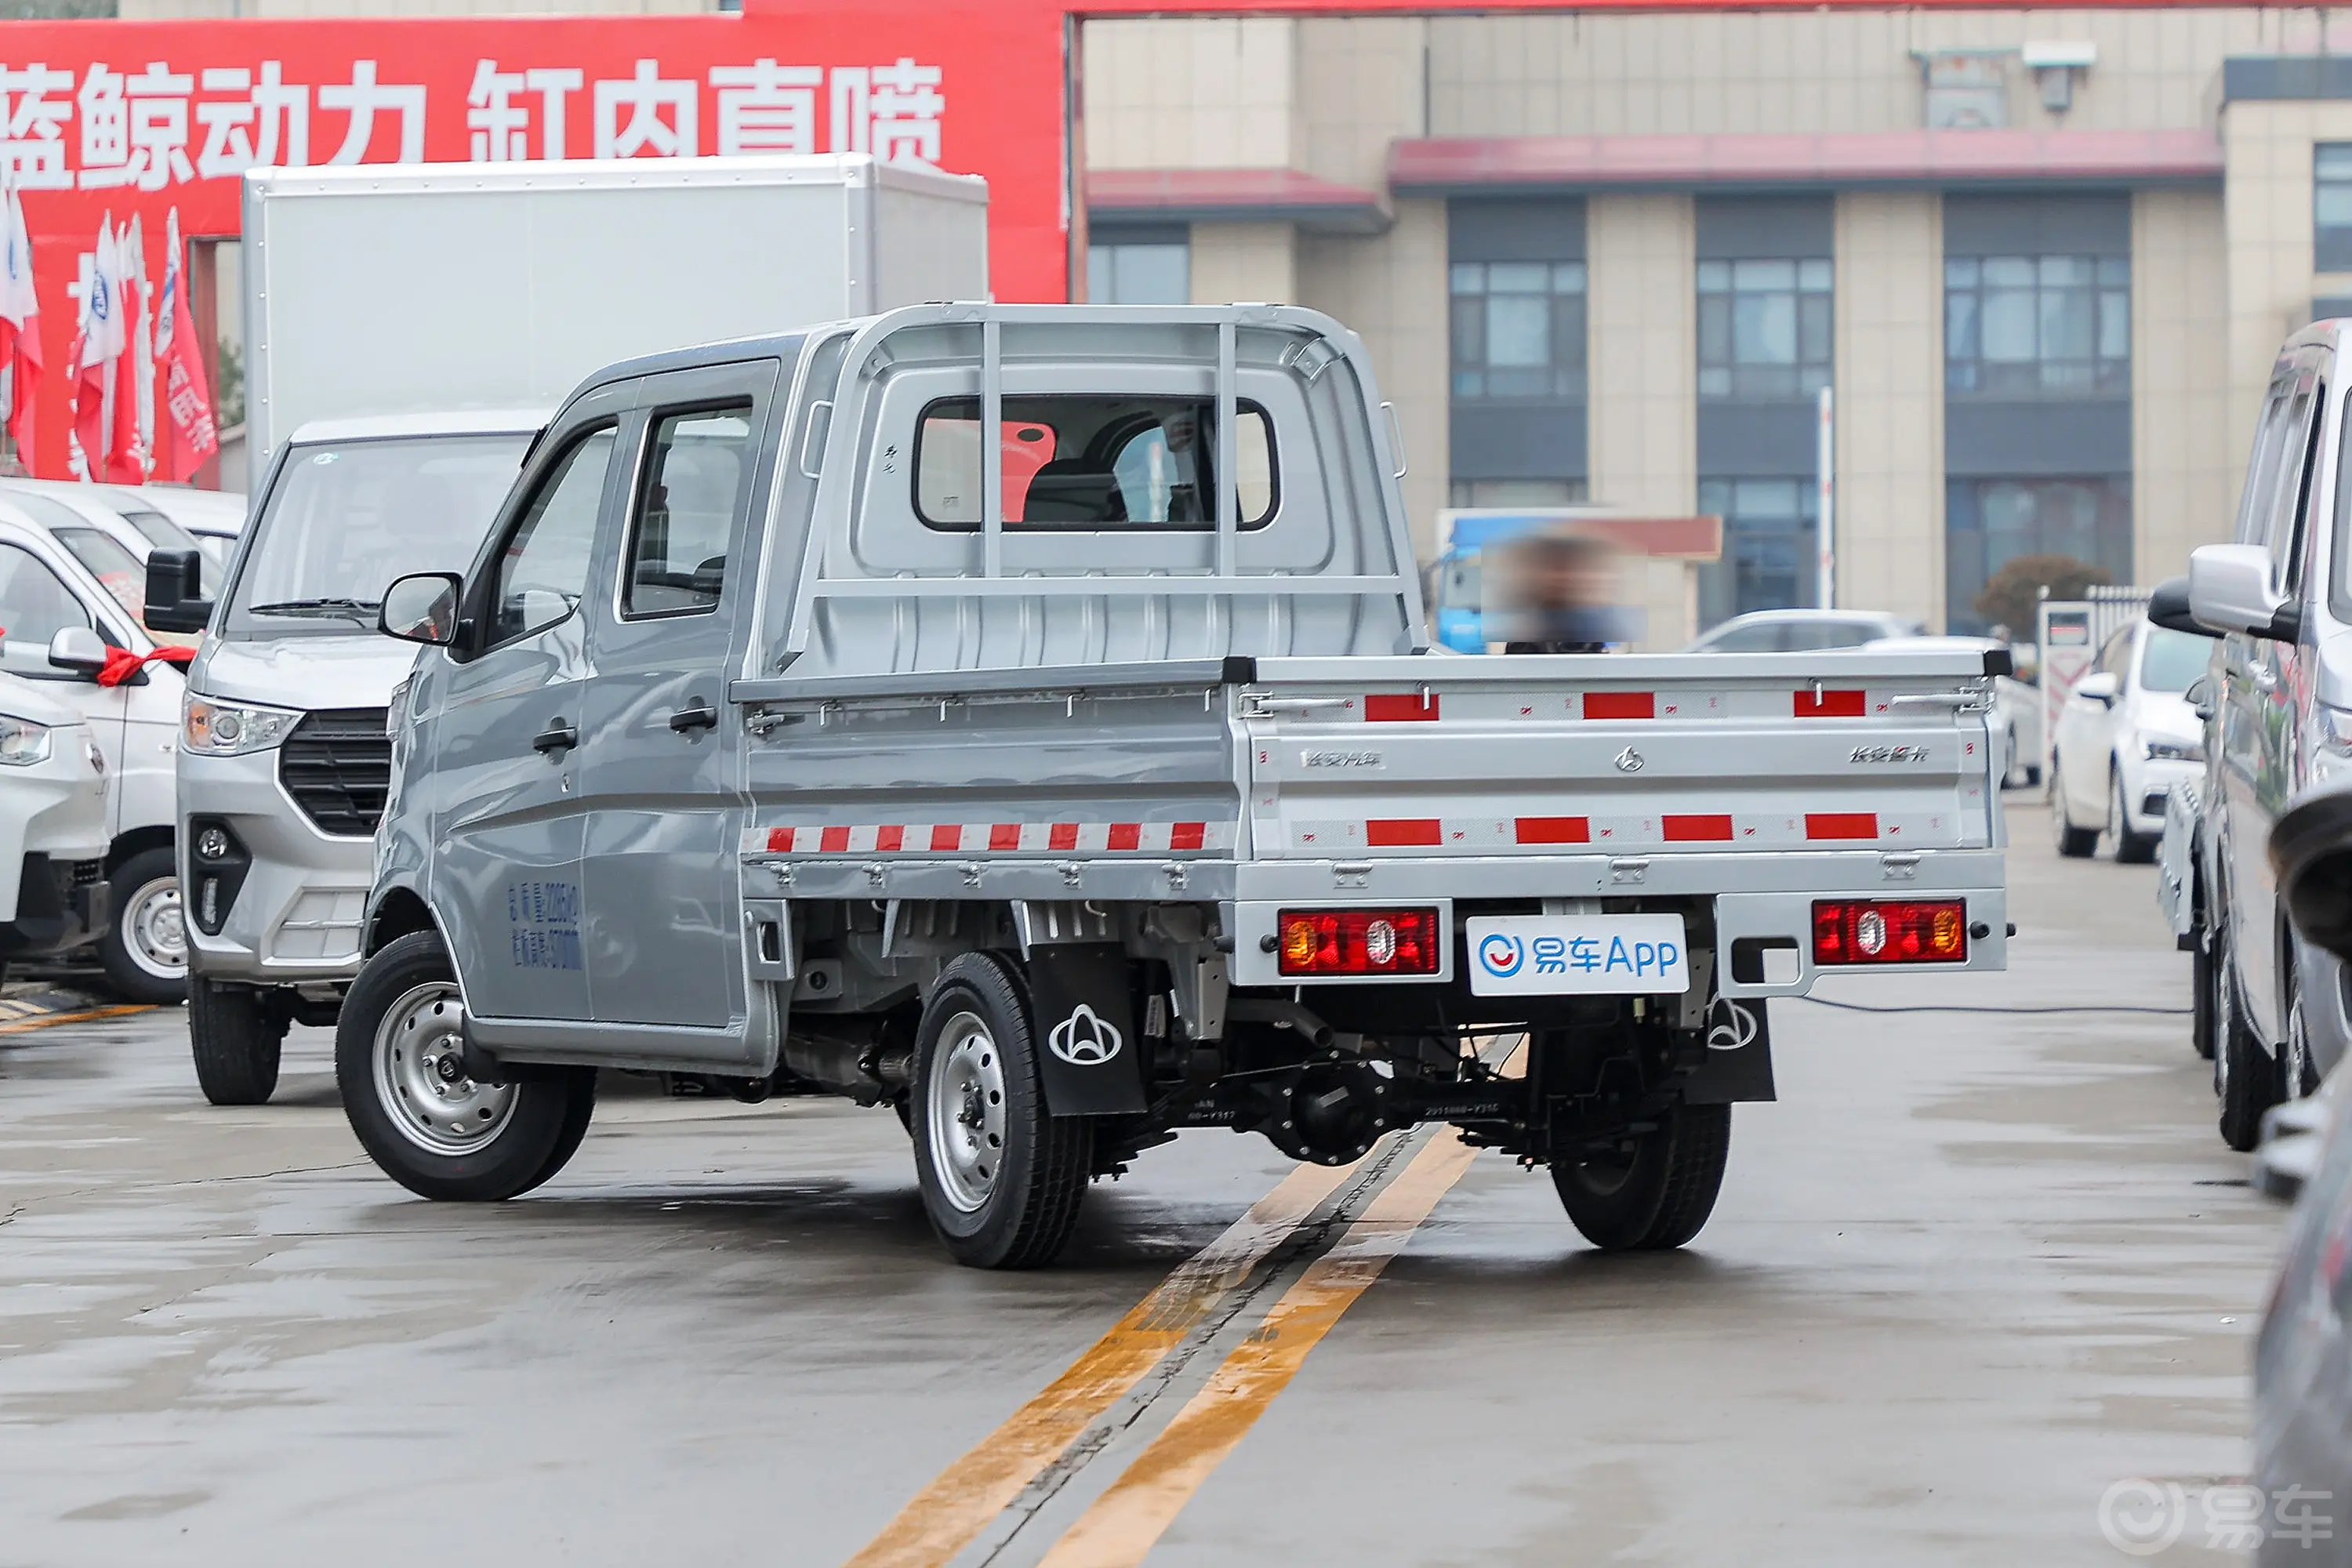 长安星卡1.5L 双排2.55米载货汽车标准型侧后45度车头向左水平